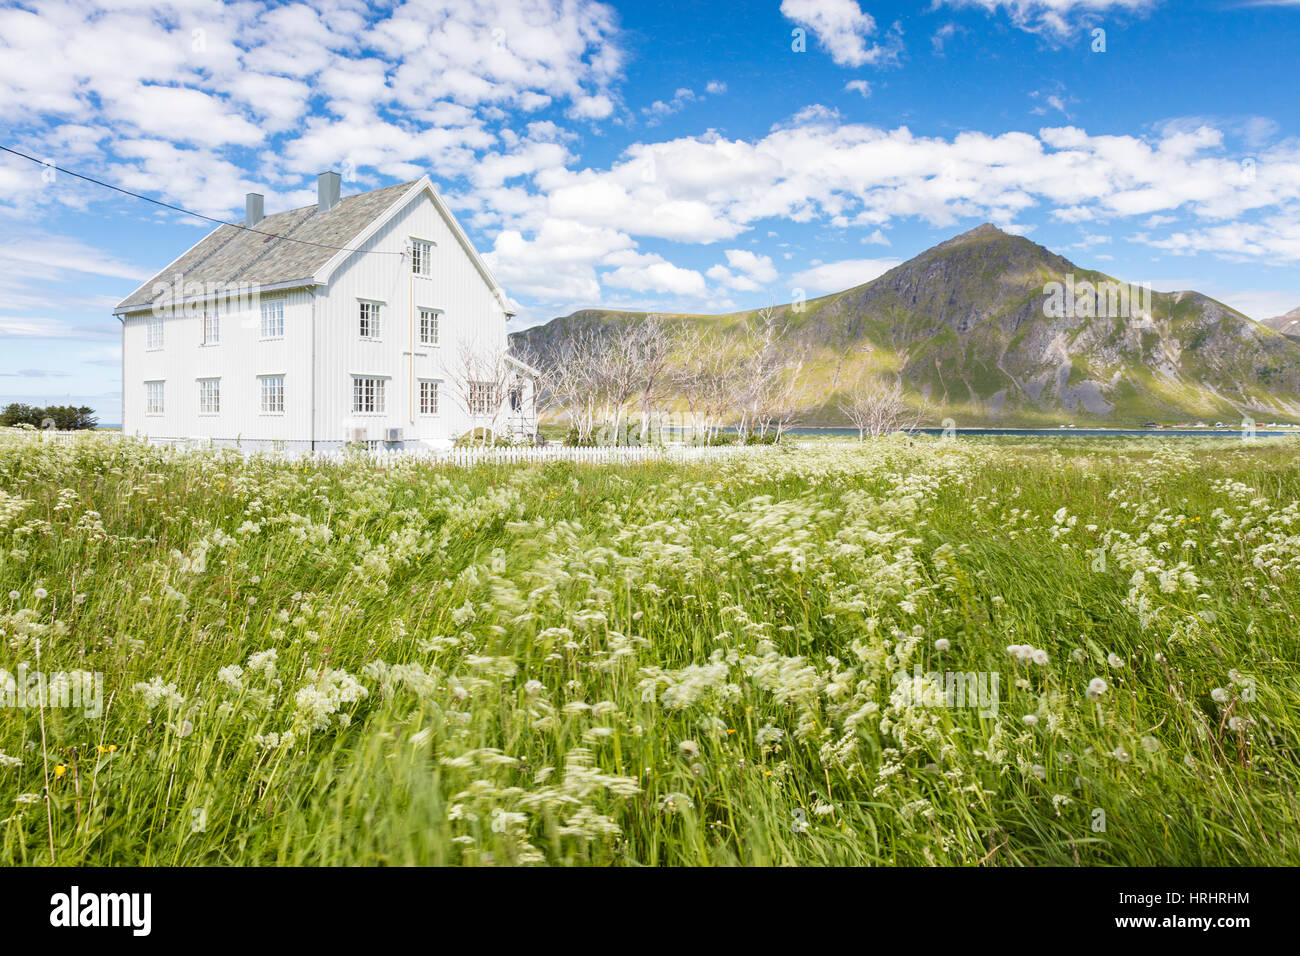 Domaine de fleurs le châssis en bois typique maison entourée de sommets et de mer bleue, Flakstad, îles Lofoten, Norvège Banque D'Images